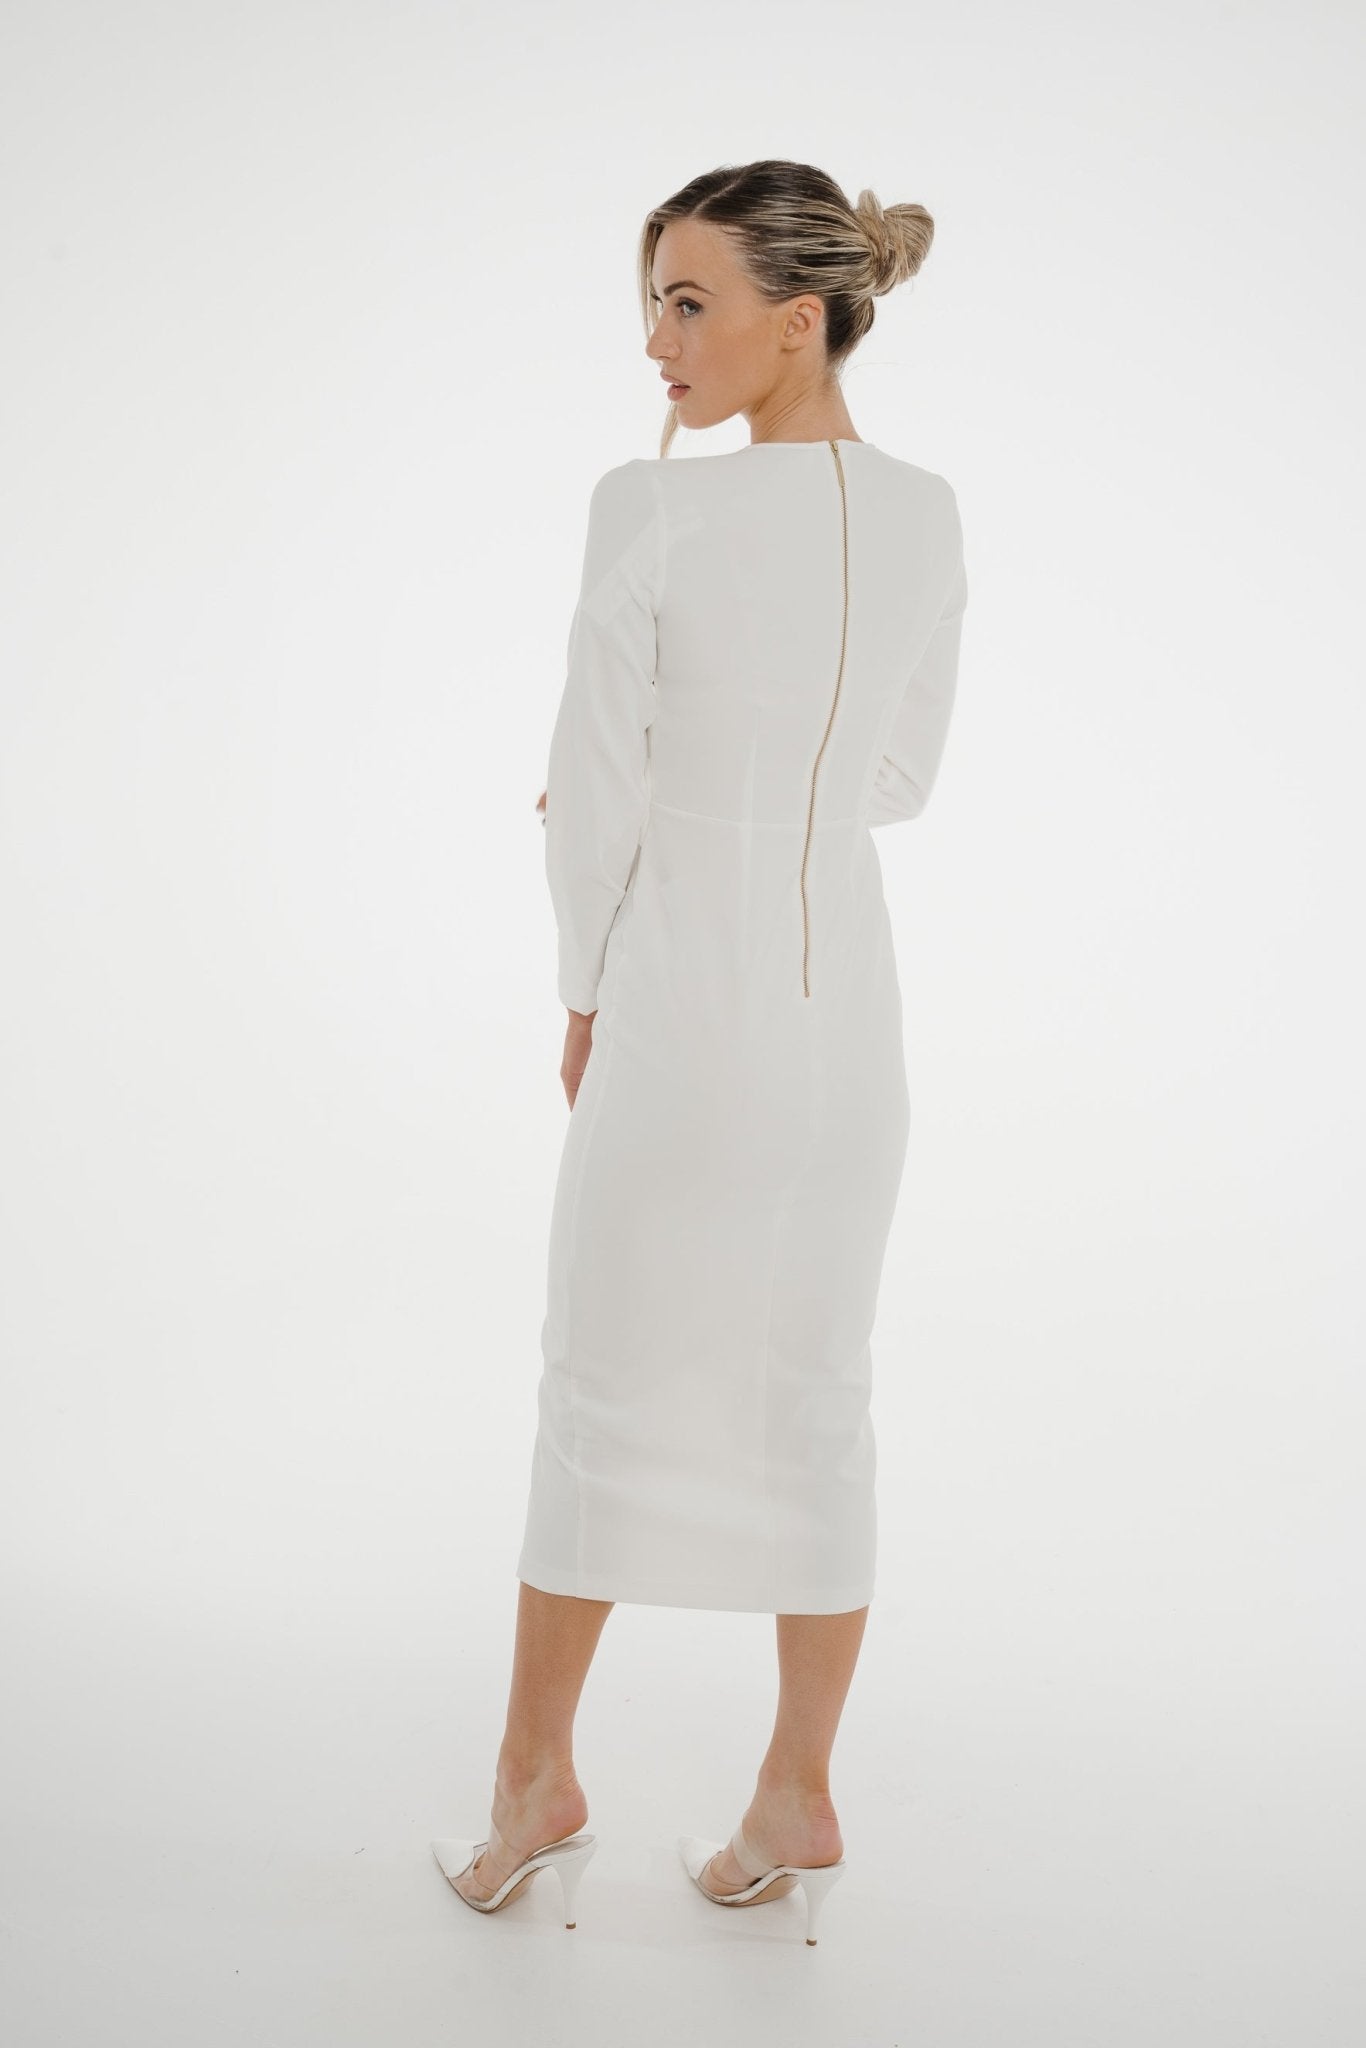 Celine Pencil Drape Midi Dress In Ivory - The Walk in Wardrobe